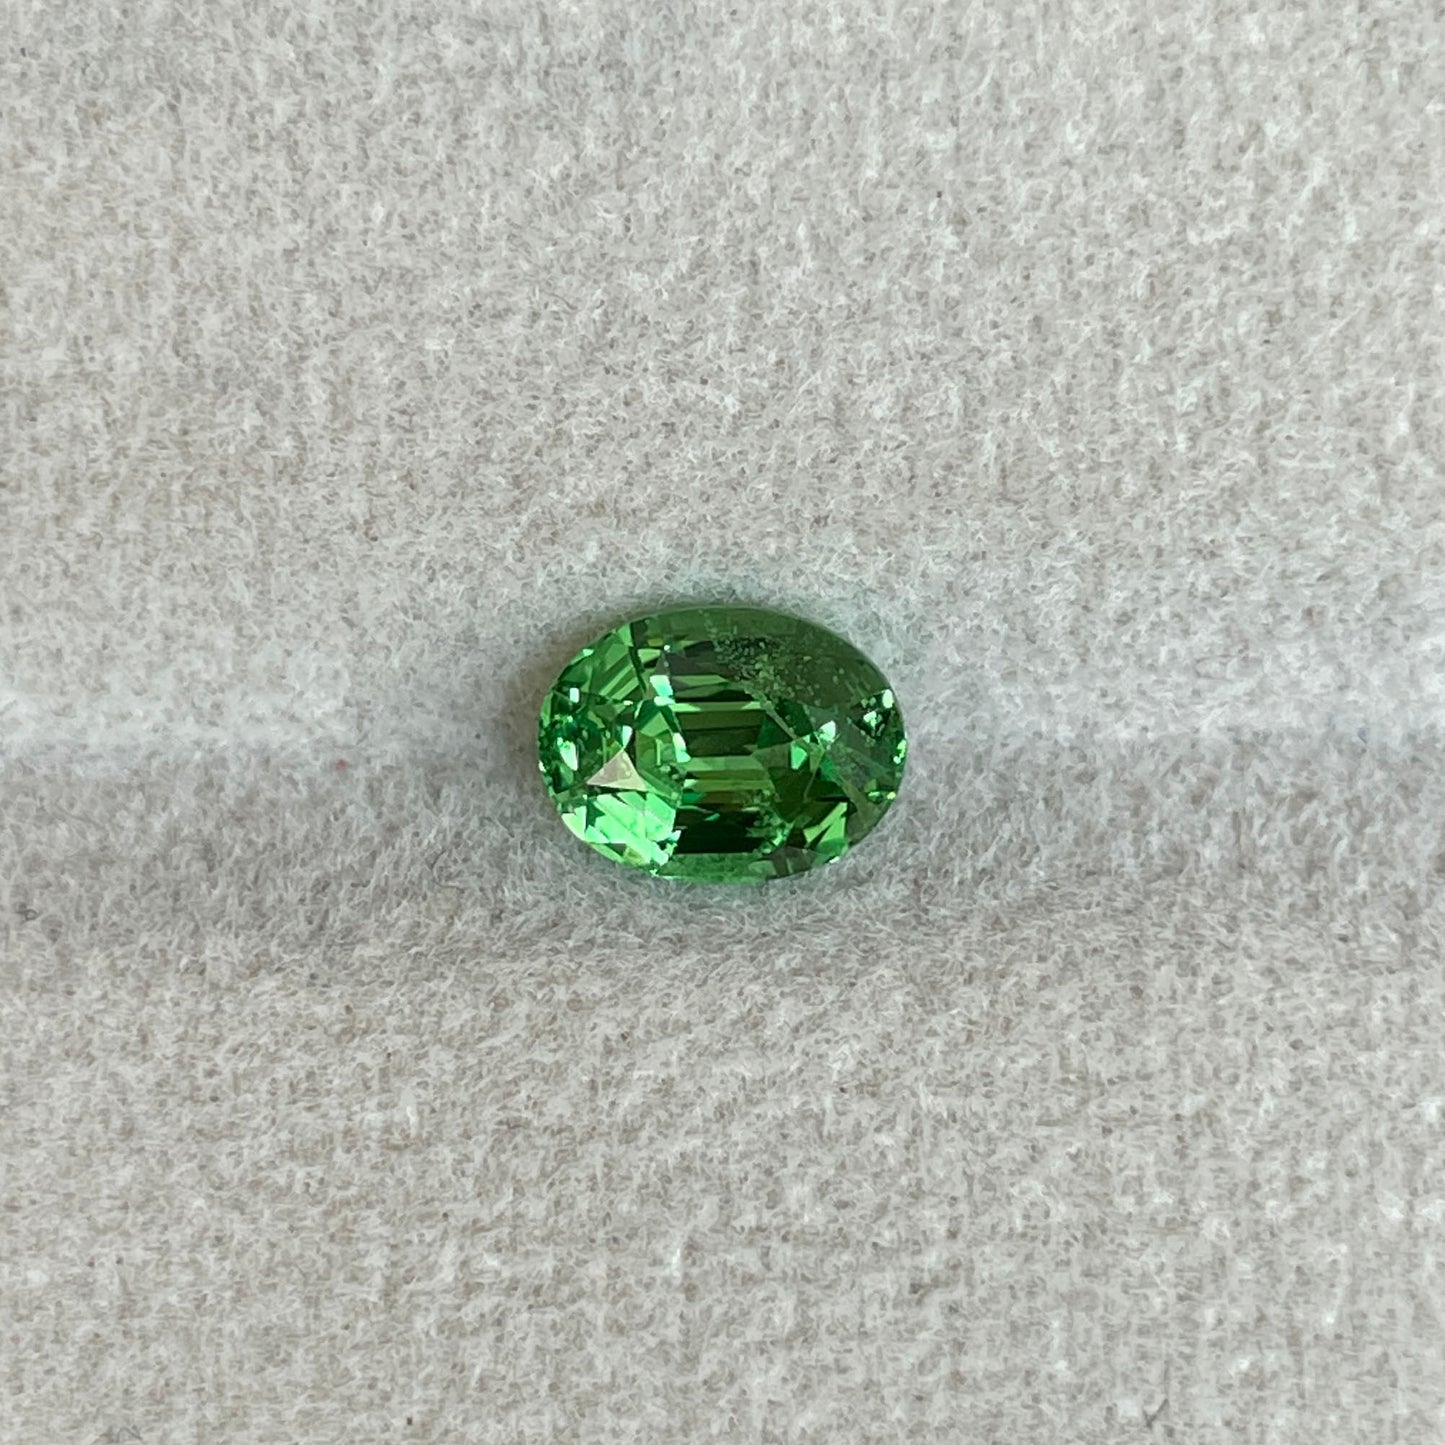 1.14 crt, faceted Natural Green Tsavorite Garnet from Tanzania, Emerald Alternative